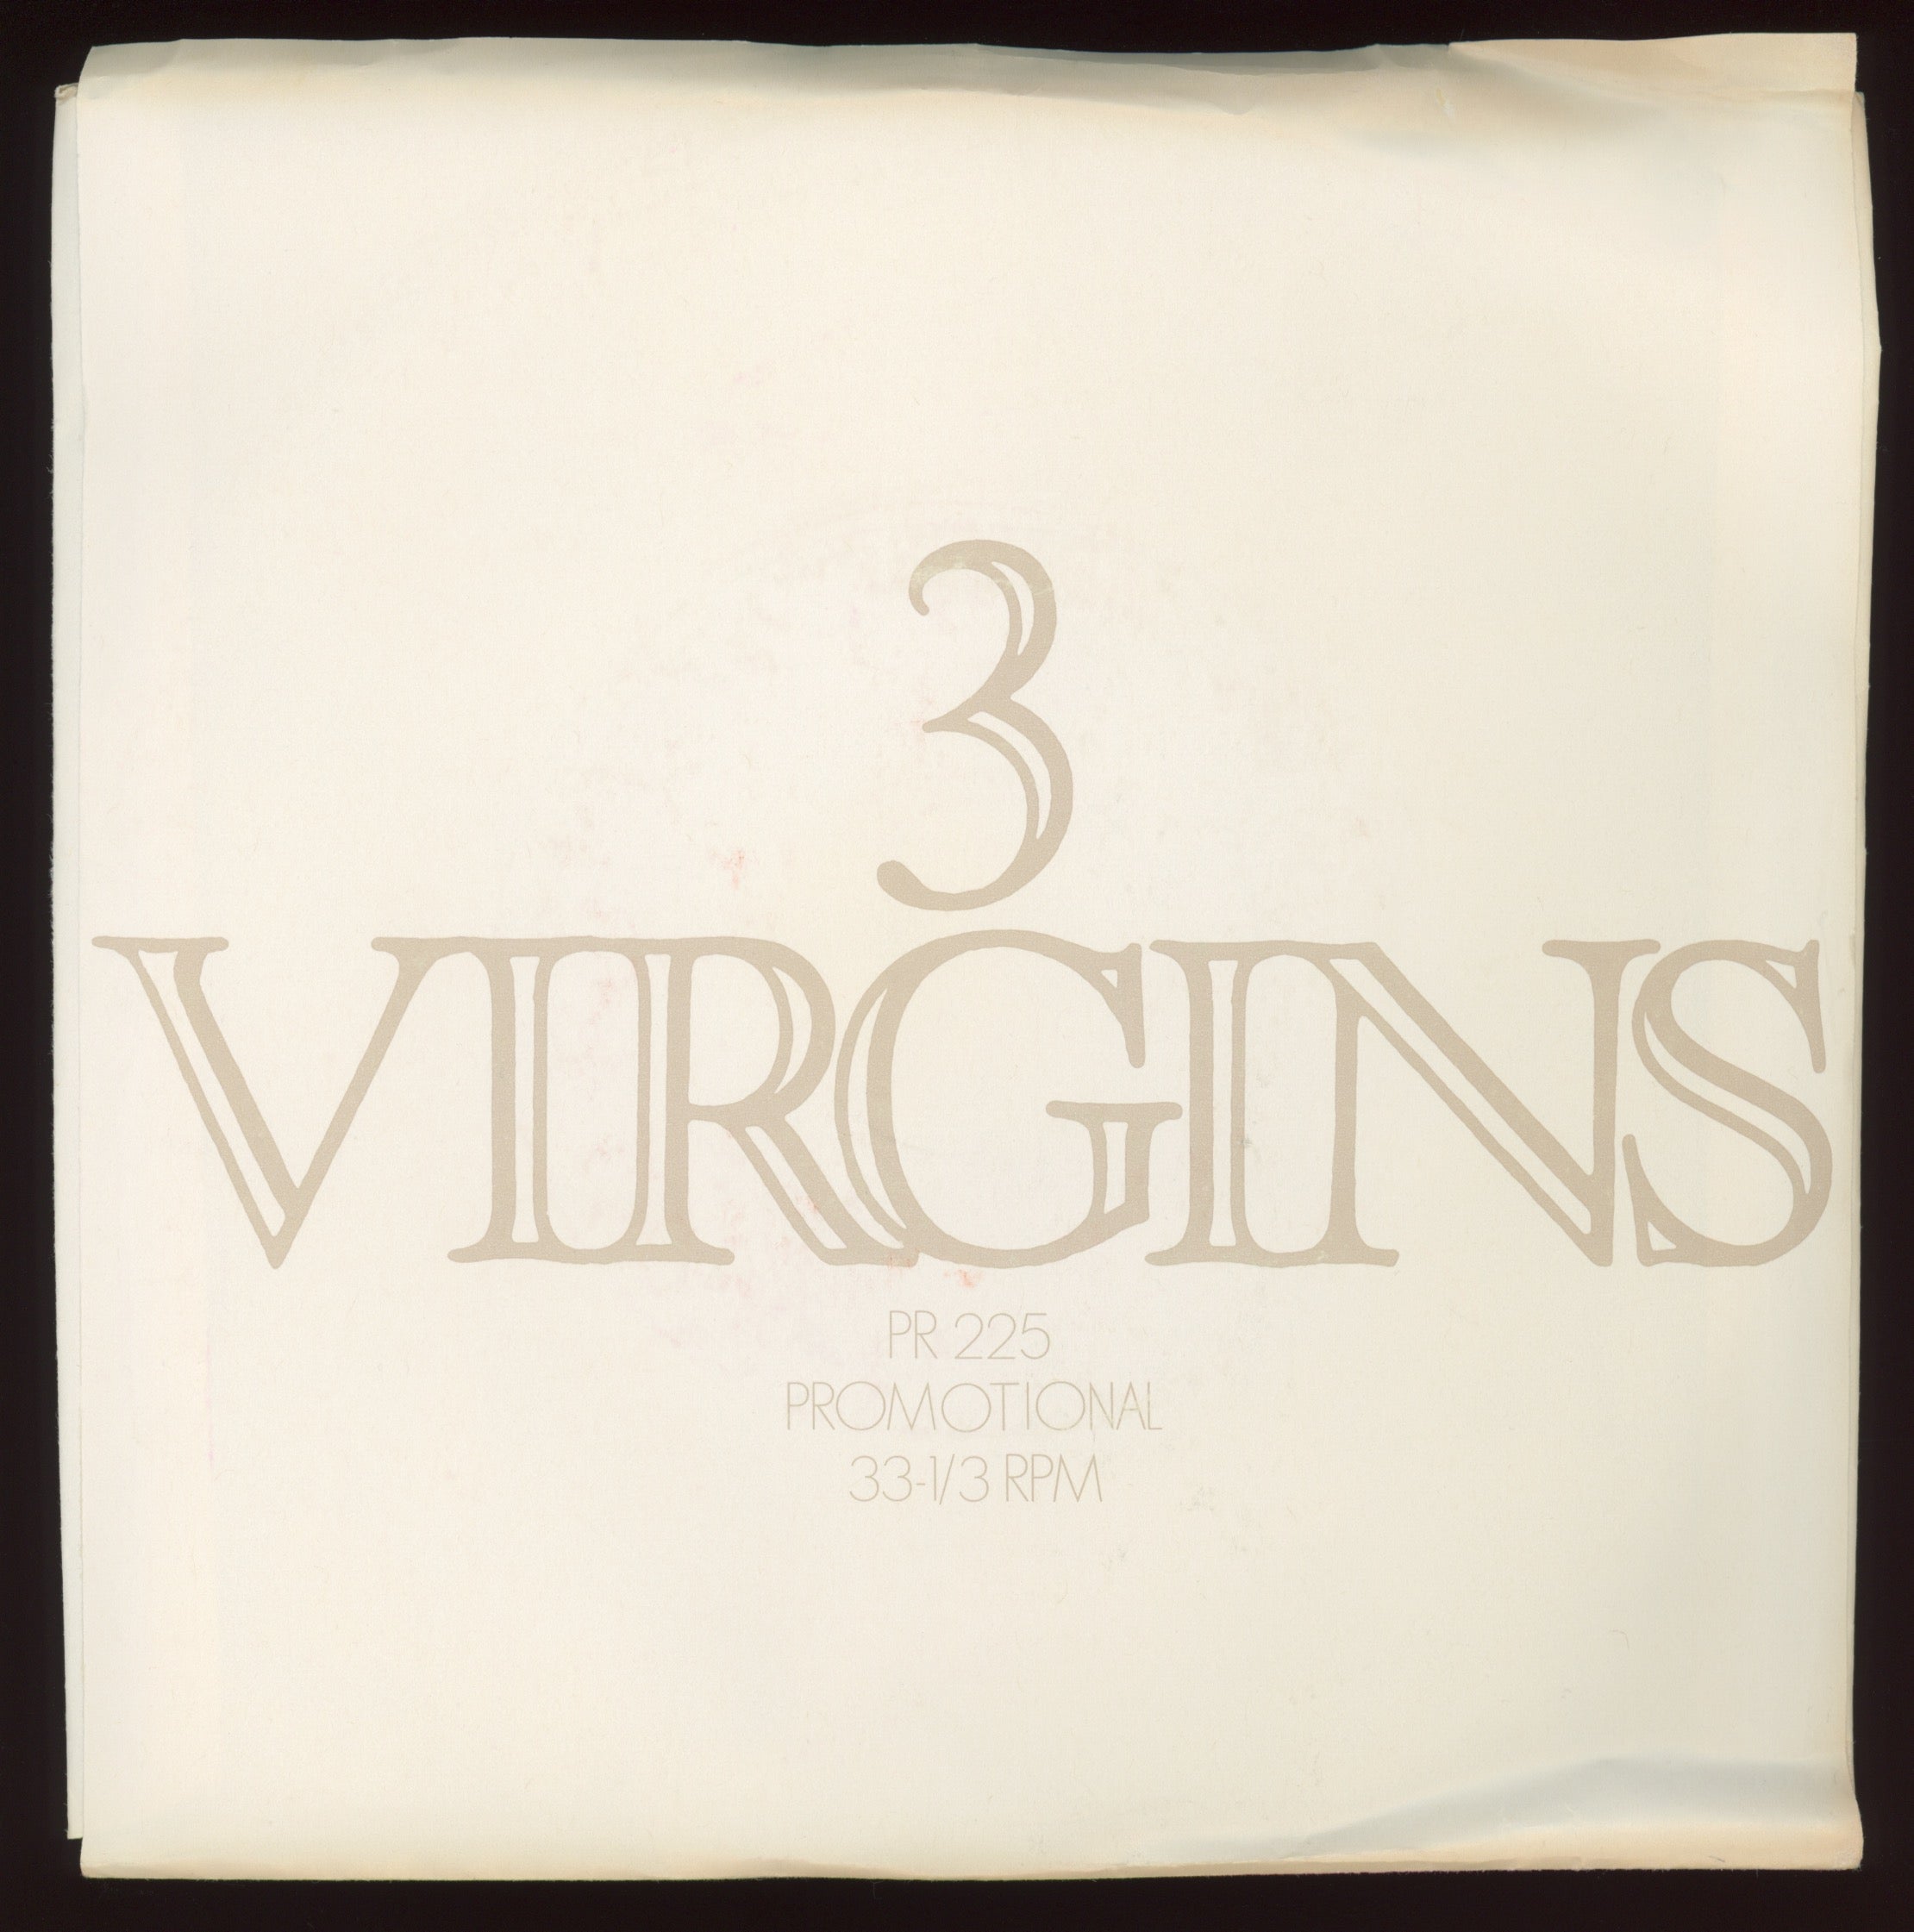 Gong - 3 Virgins on Virgin Promo Sampler EP